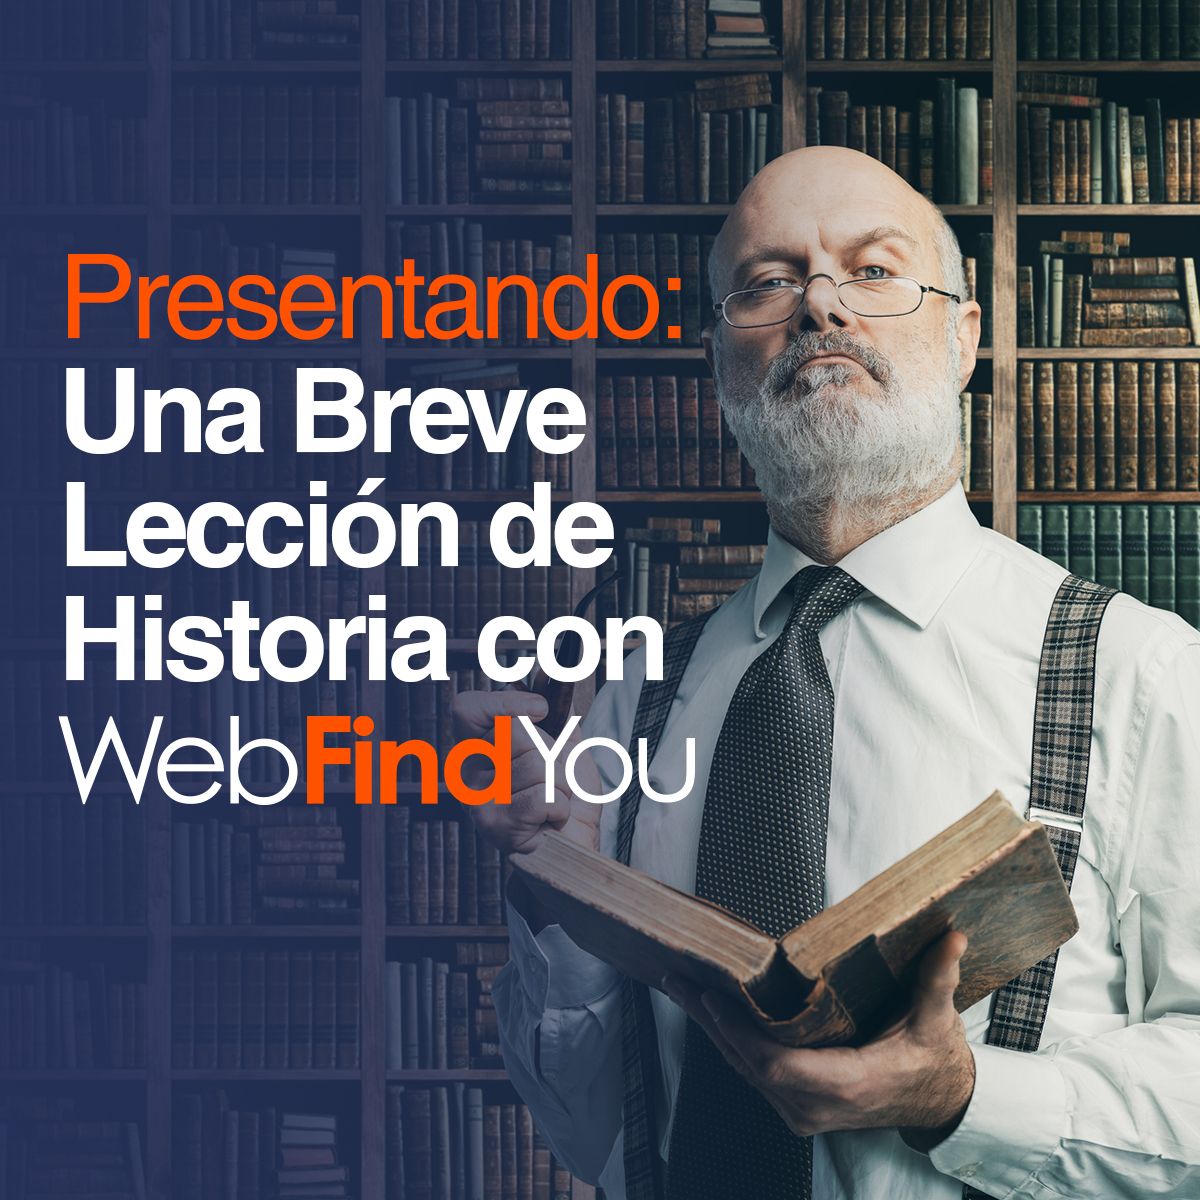 Presentando: Una Breve Lección de Historia con WebFindYou